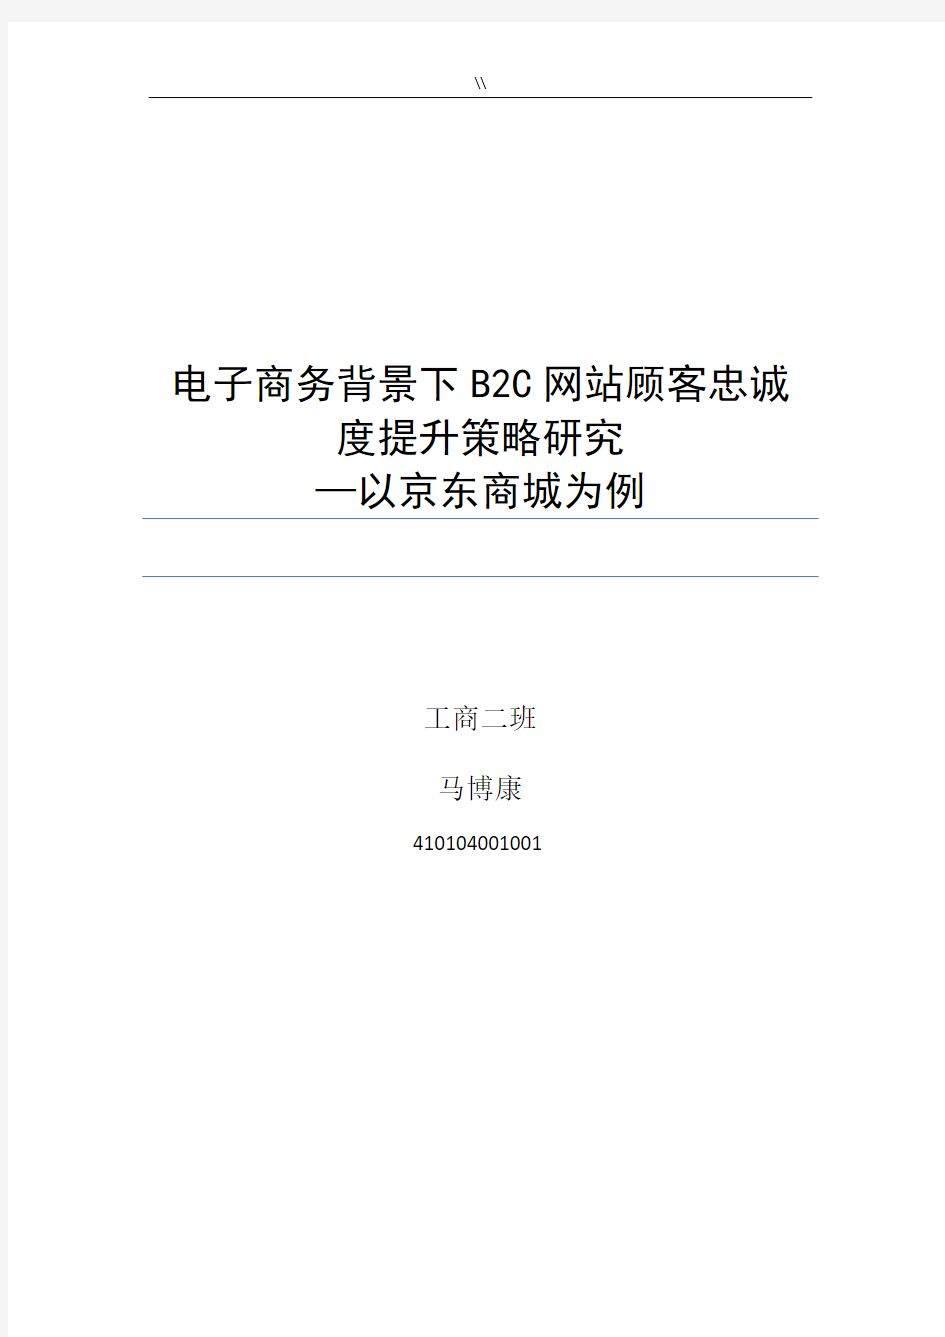 马博康电子商务背景下B2C网站顾客忠诚度分析研究计划以京东商城为例